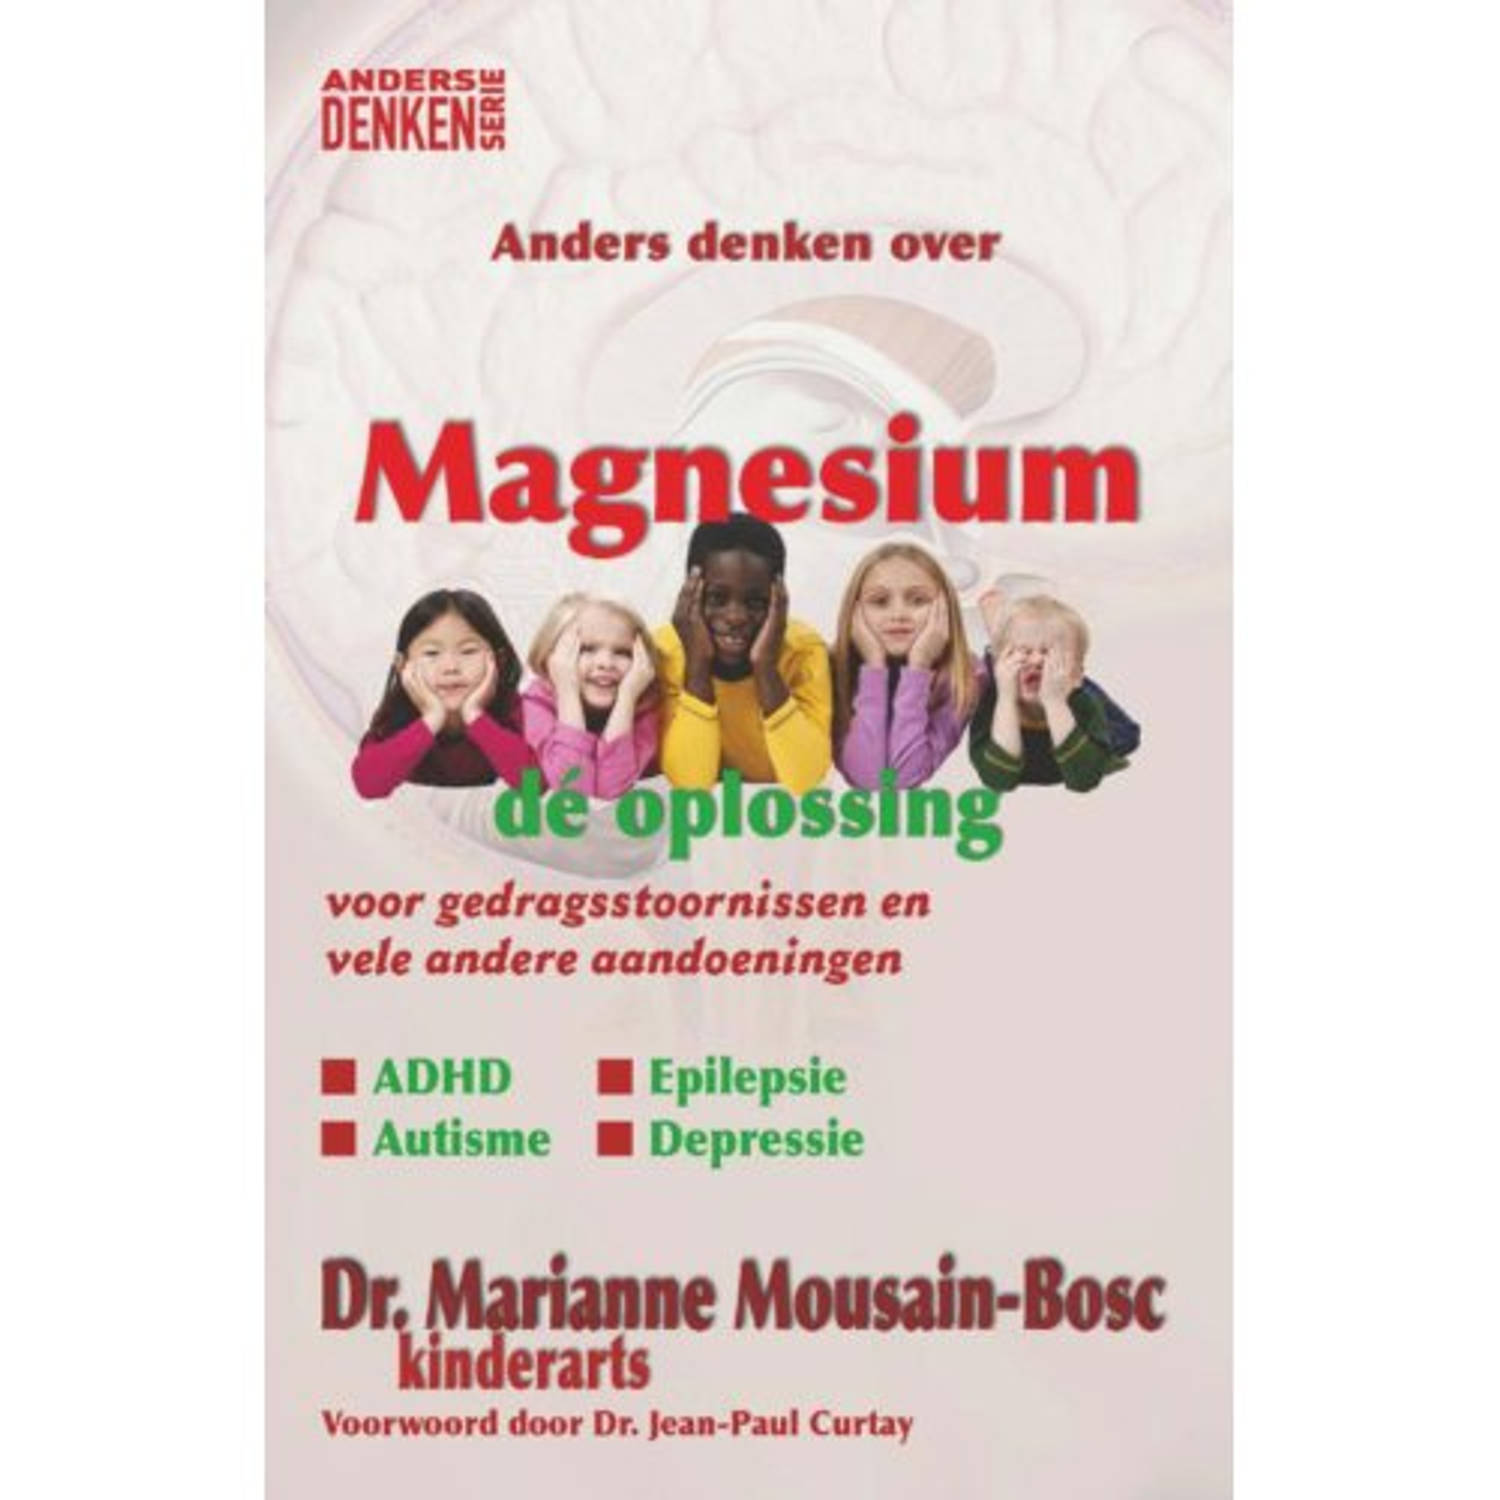 Paagman magnesium - anders denken serie